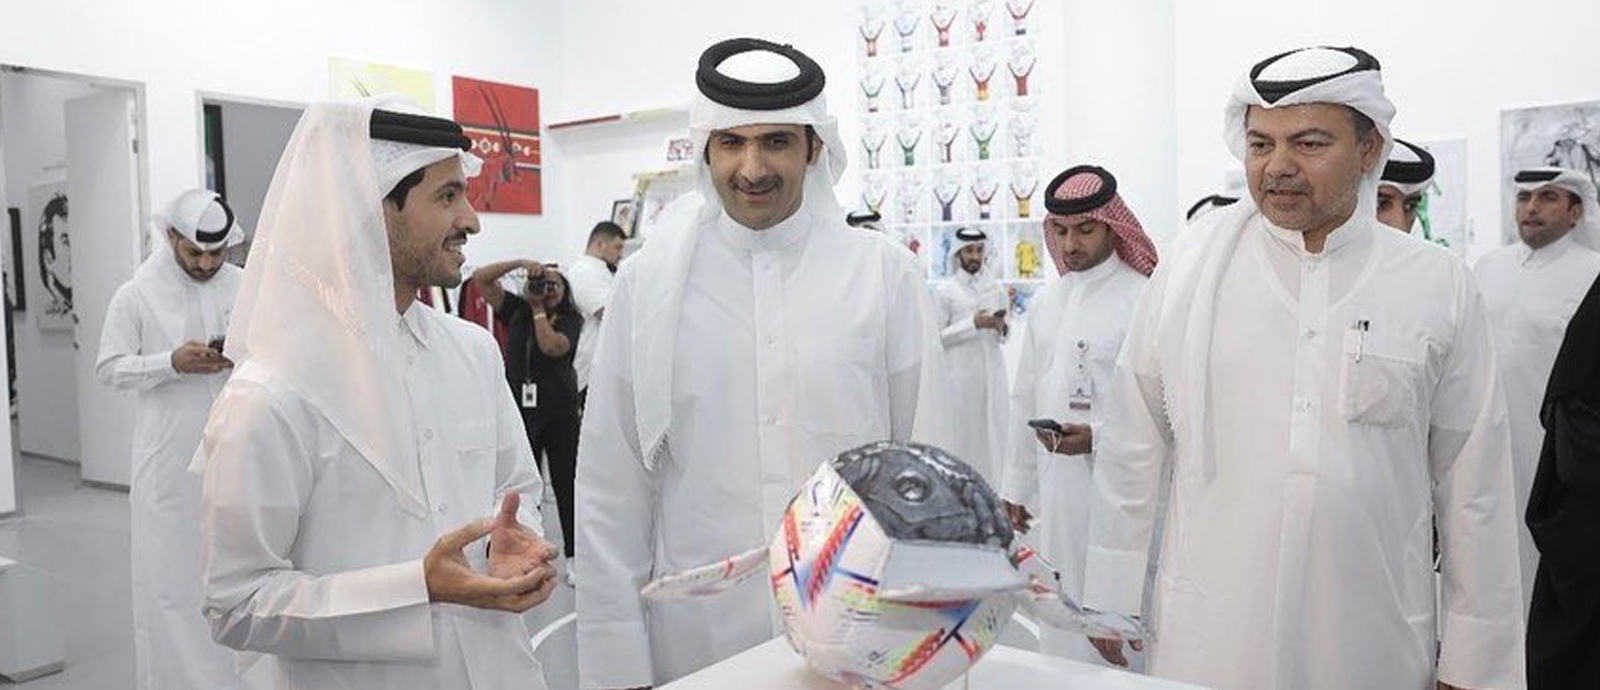 وزير الثقافة يفتتح معرض "هدف" للفنان أحمد المعاضيد